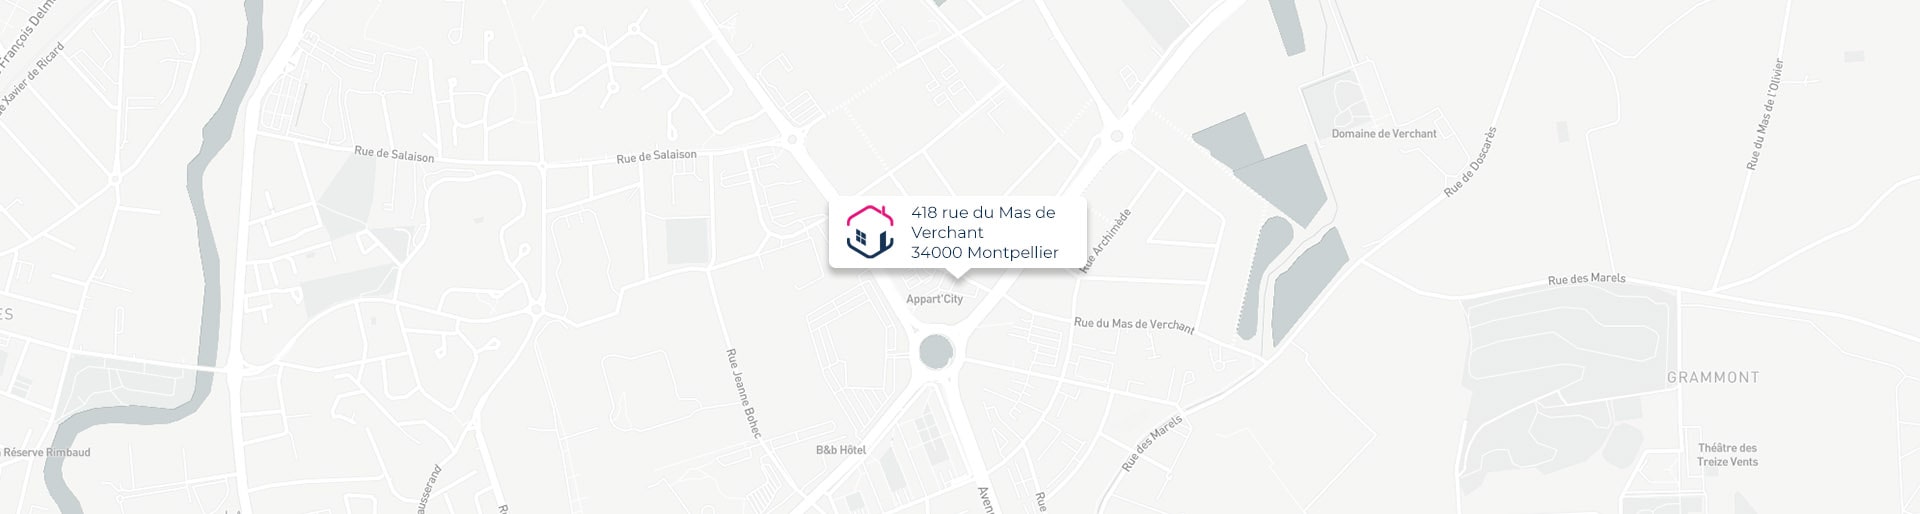 Plan de l'agence de Montpellier IMMO9 située 418, rue du Mas de Verchant 34000 Montpellier tel: 0411937334